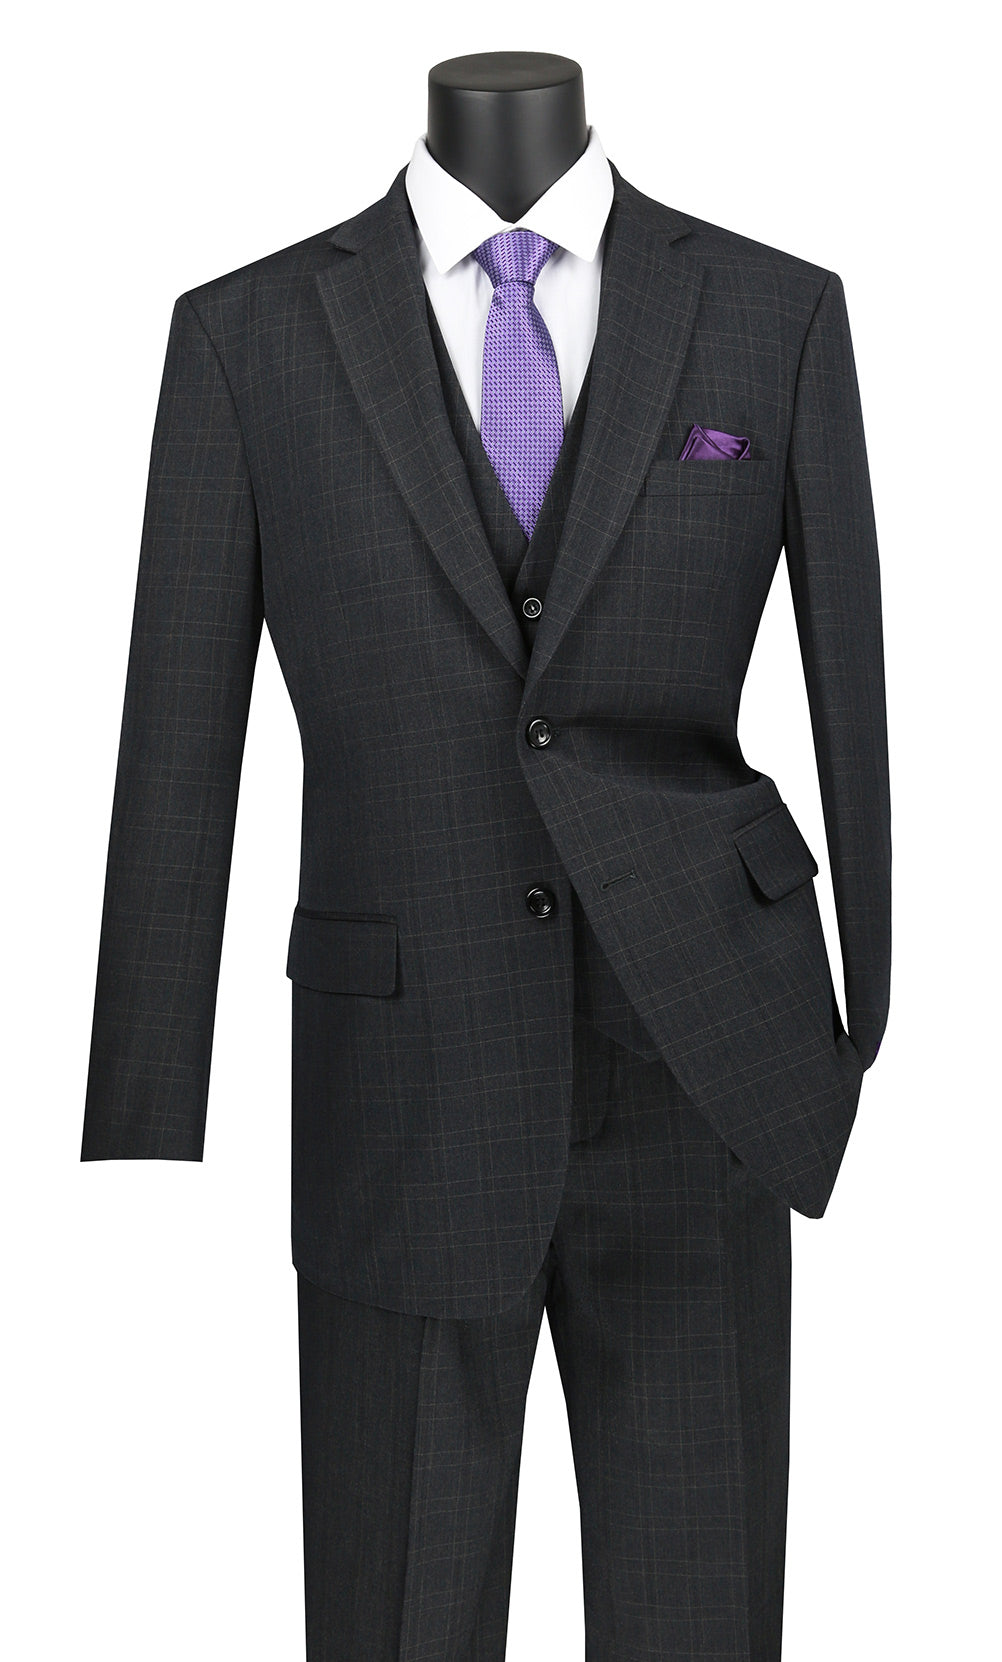 Men's Suits, 3-Piece, Black & Gray Plaid Suits